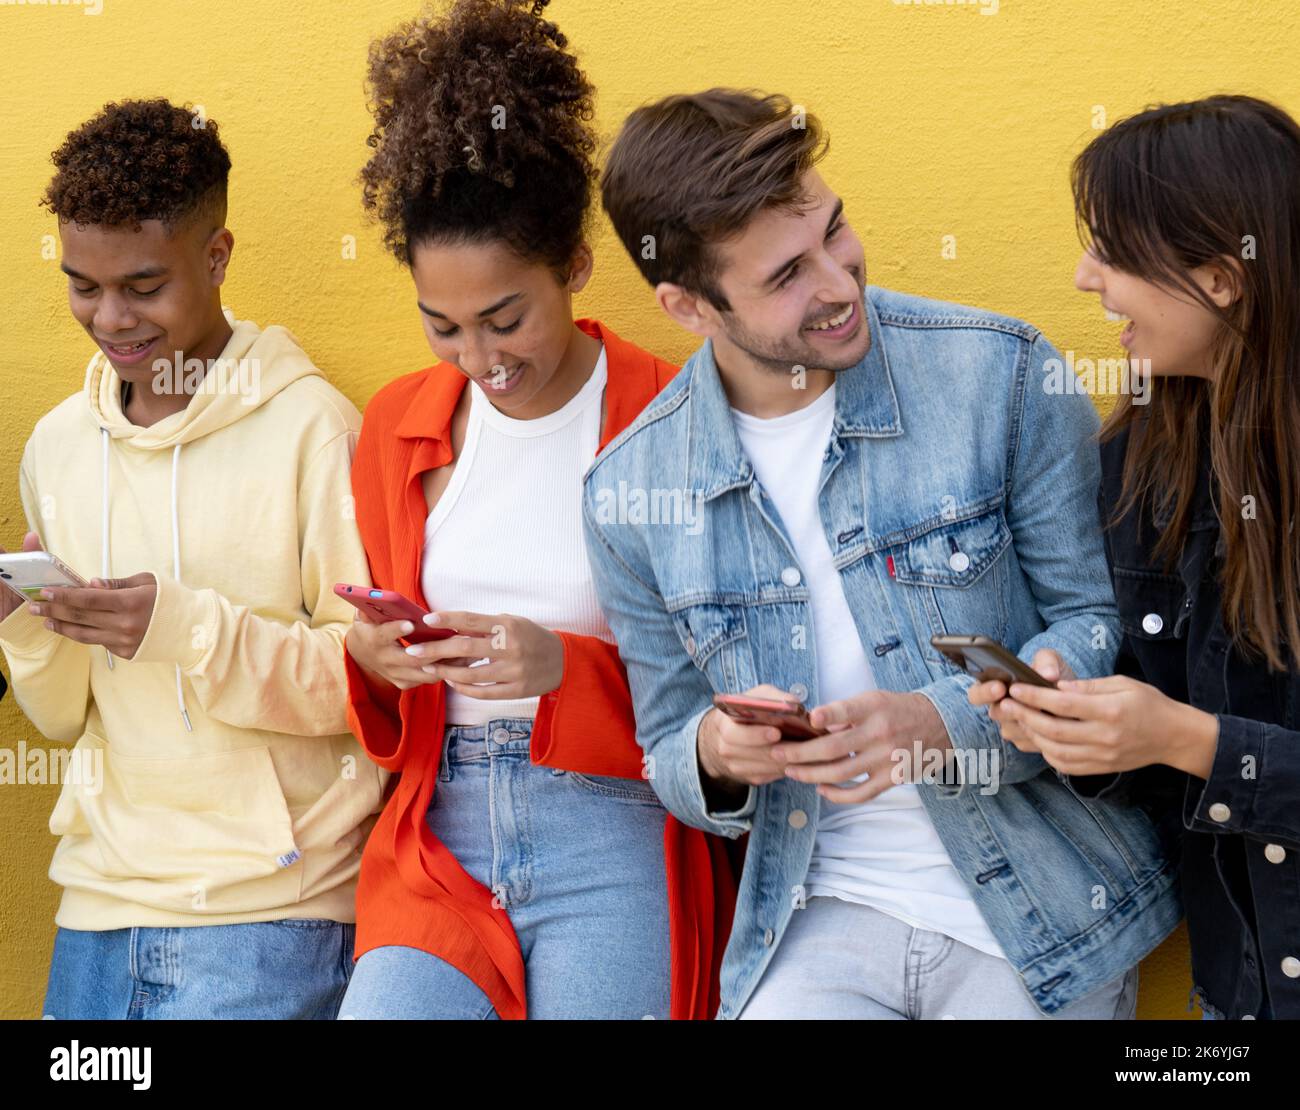 Groupe de jeunes amis du millénaire souriant tout en regardant le téléphone mobile sur un mur jaune Banque D'Images